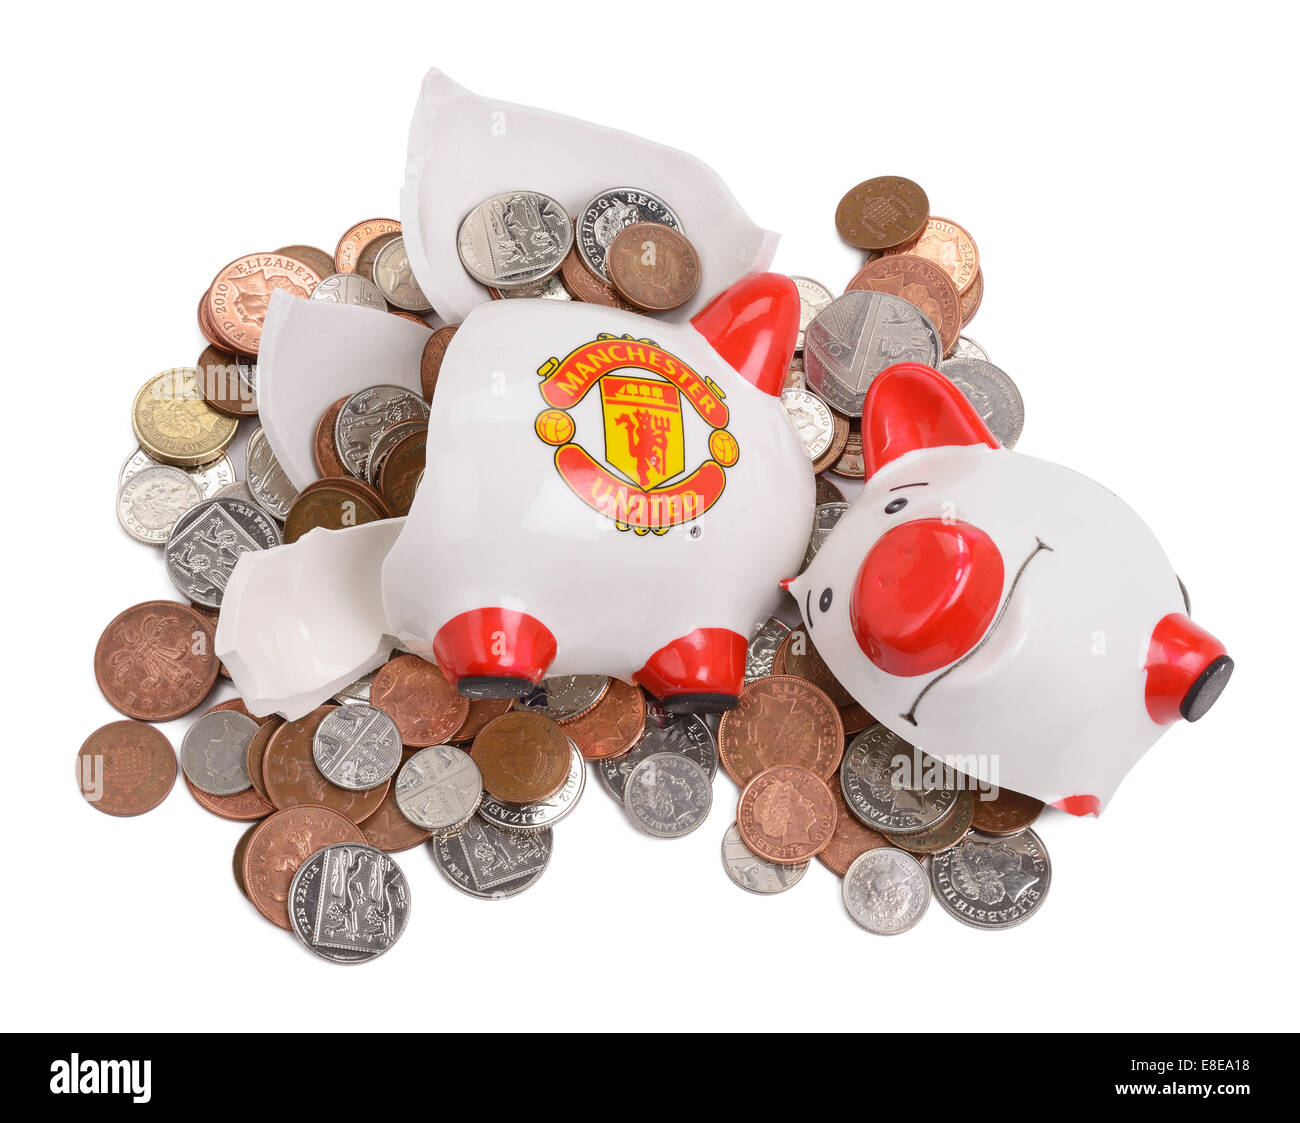 Brisé et rompu Manchester United Football Club piggy bank Banque D'Images